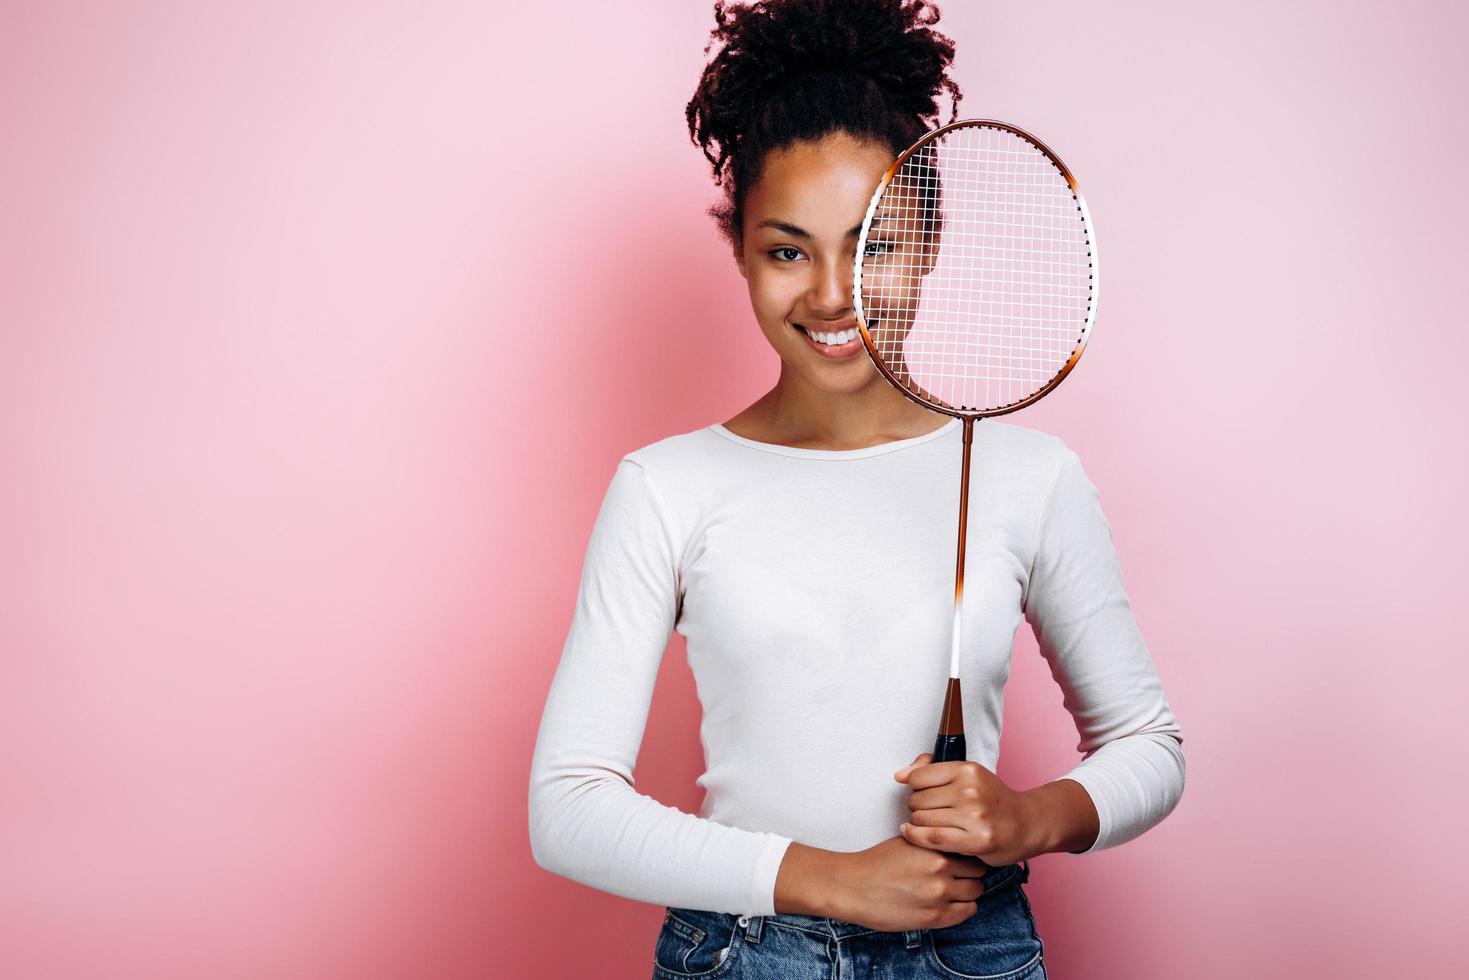 mooi, glimlachend meisje staat op een achtergrond van een roze muur, bedekt haar gezicht met een racket foto